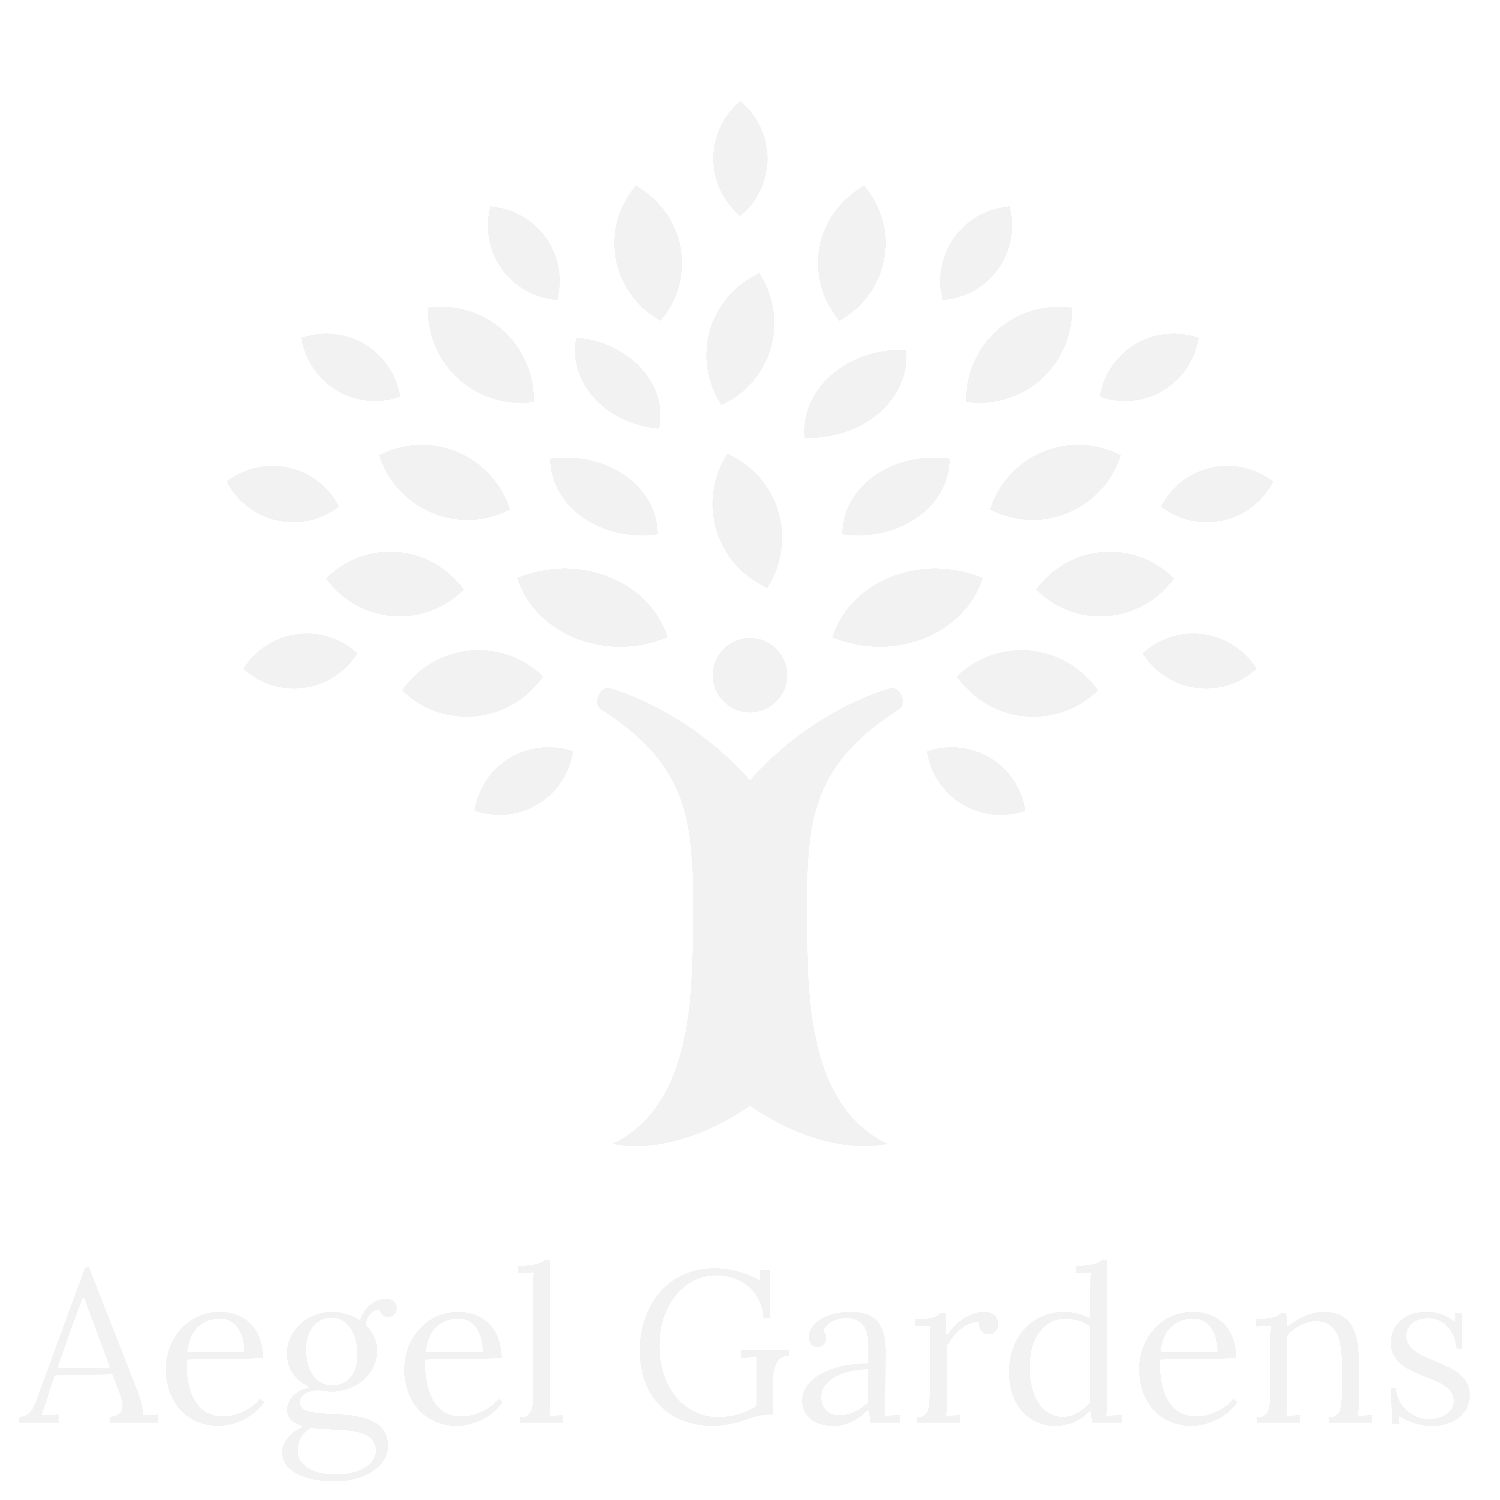 Aegel Gardens - J Bunn Homes - New homes in Aylsham